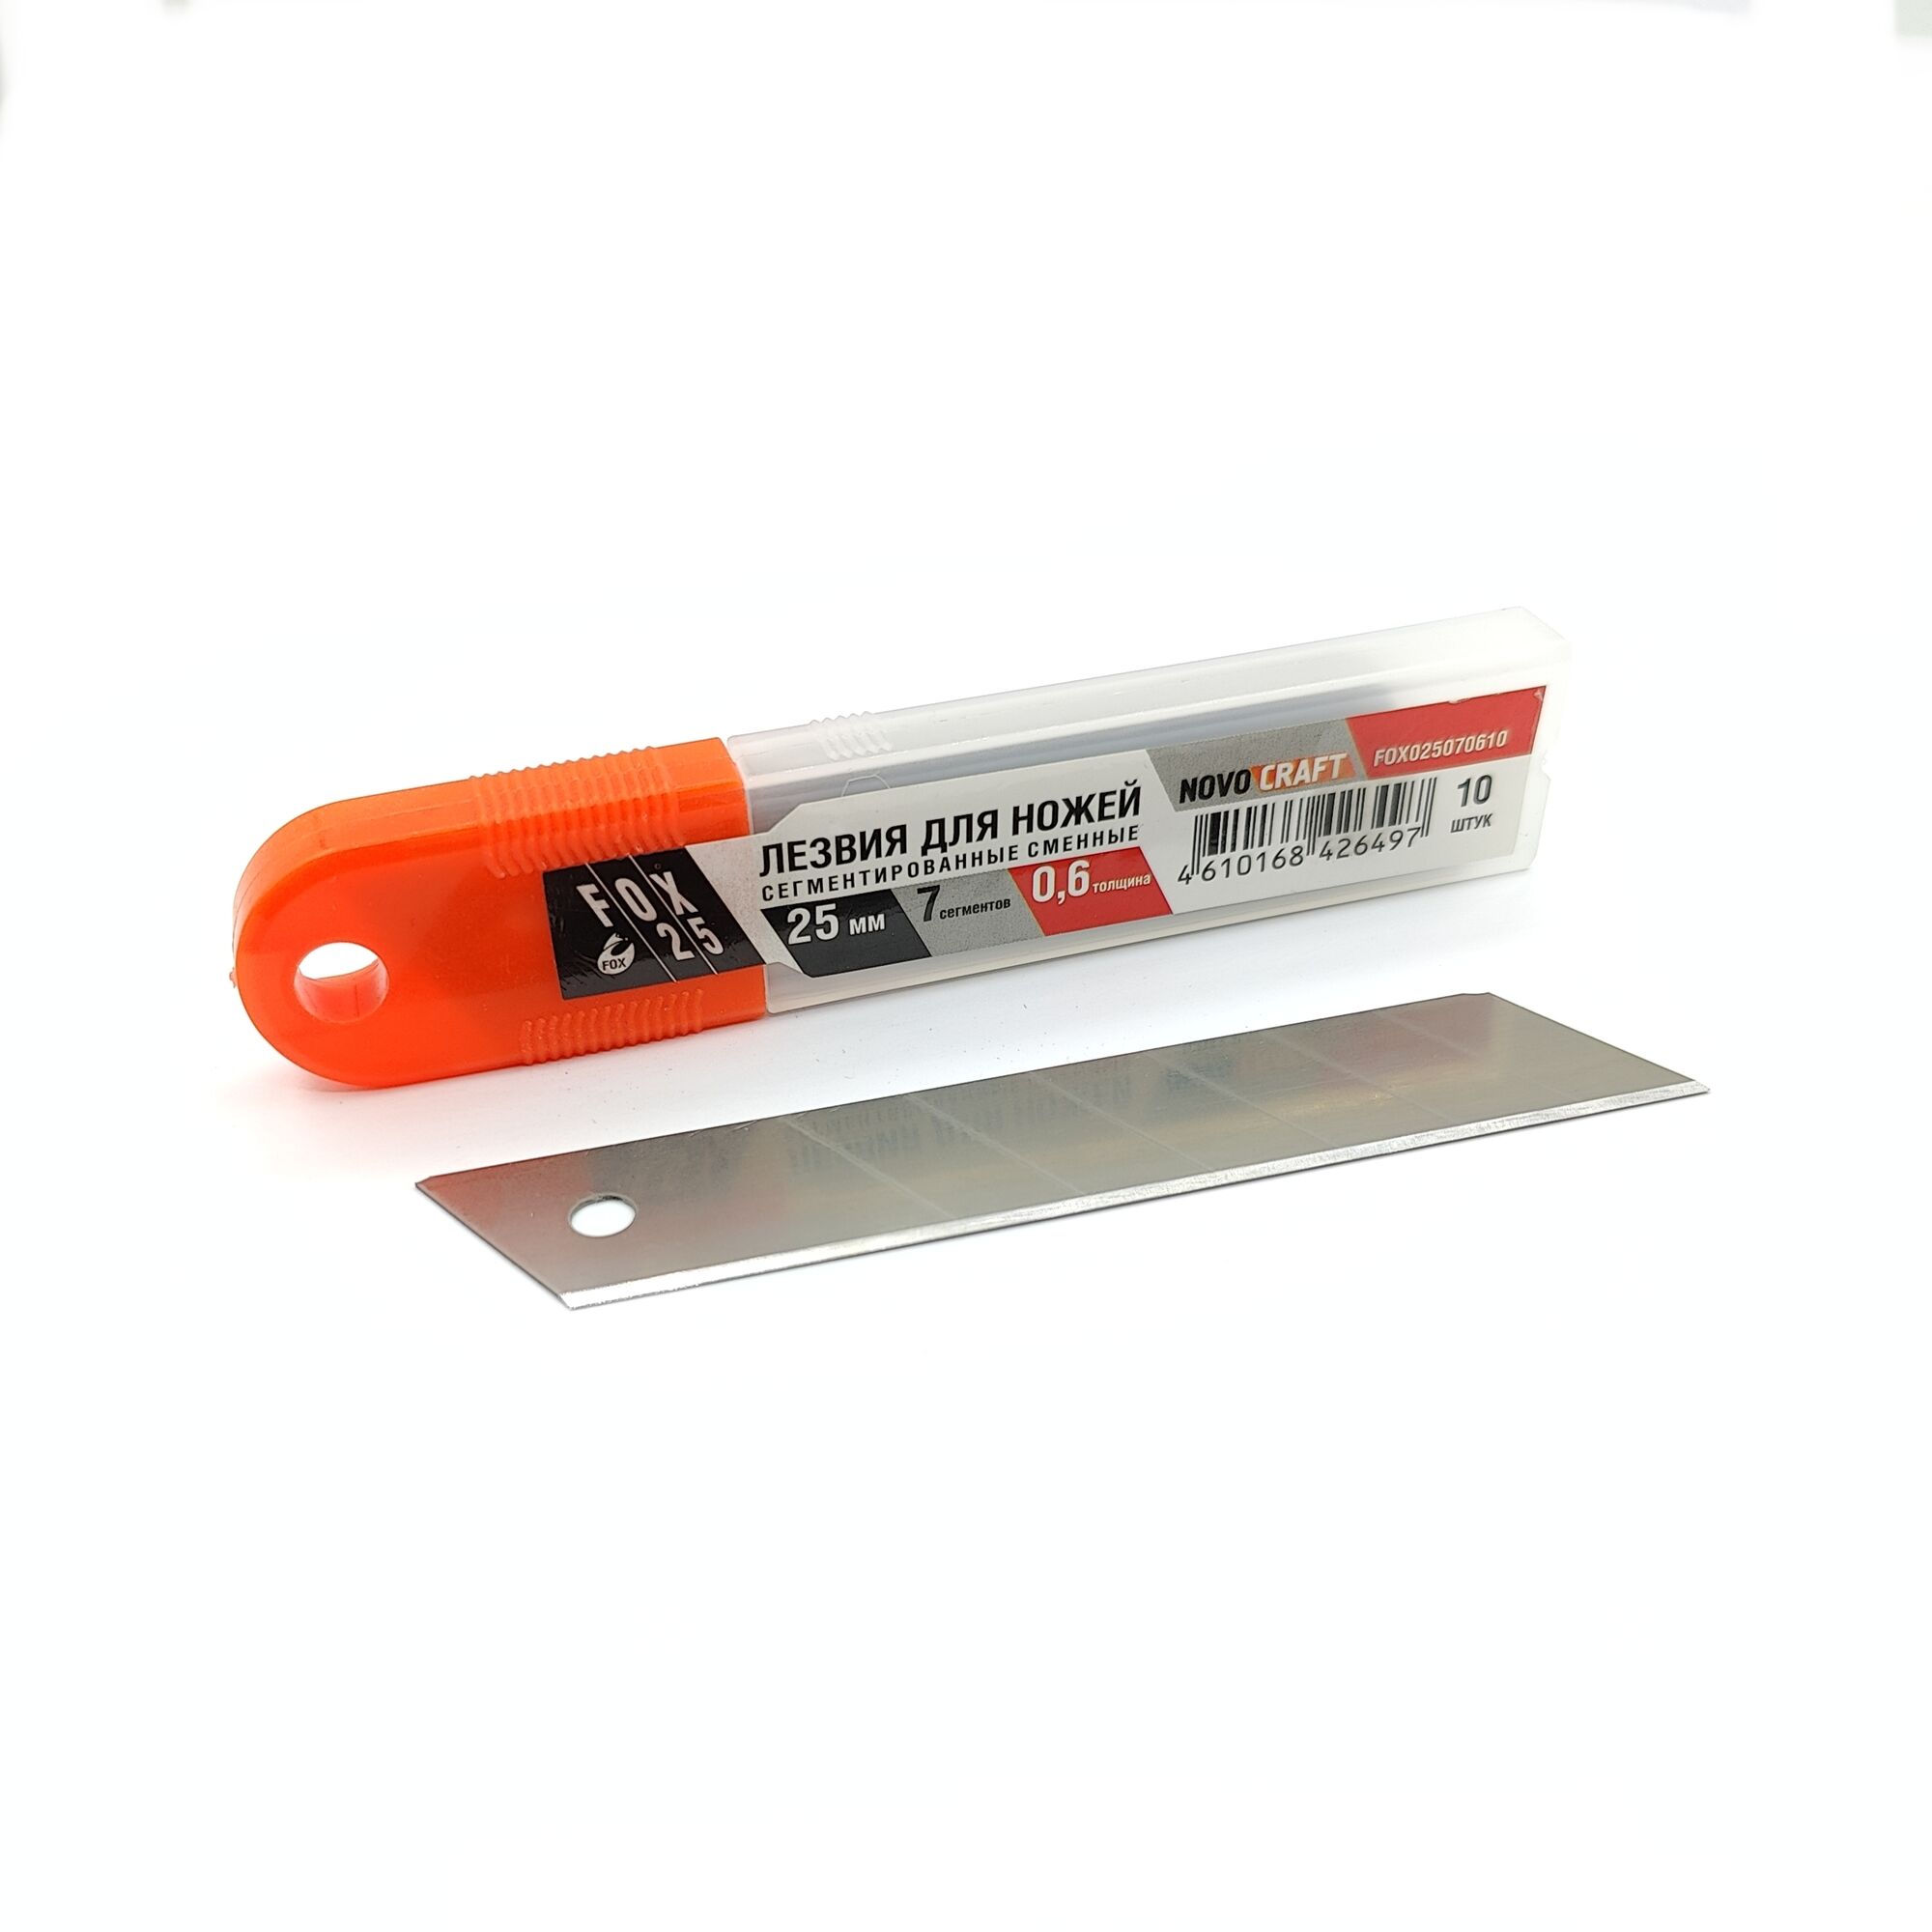 Лезвия для ножей FOX 25 mm 7 сегментов 0.6 mm 10 шт.